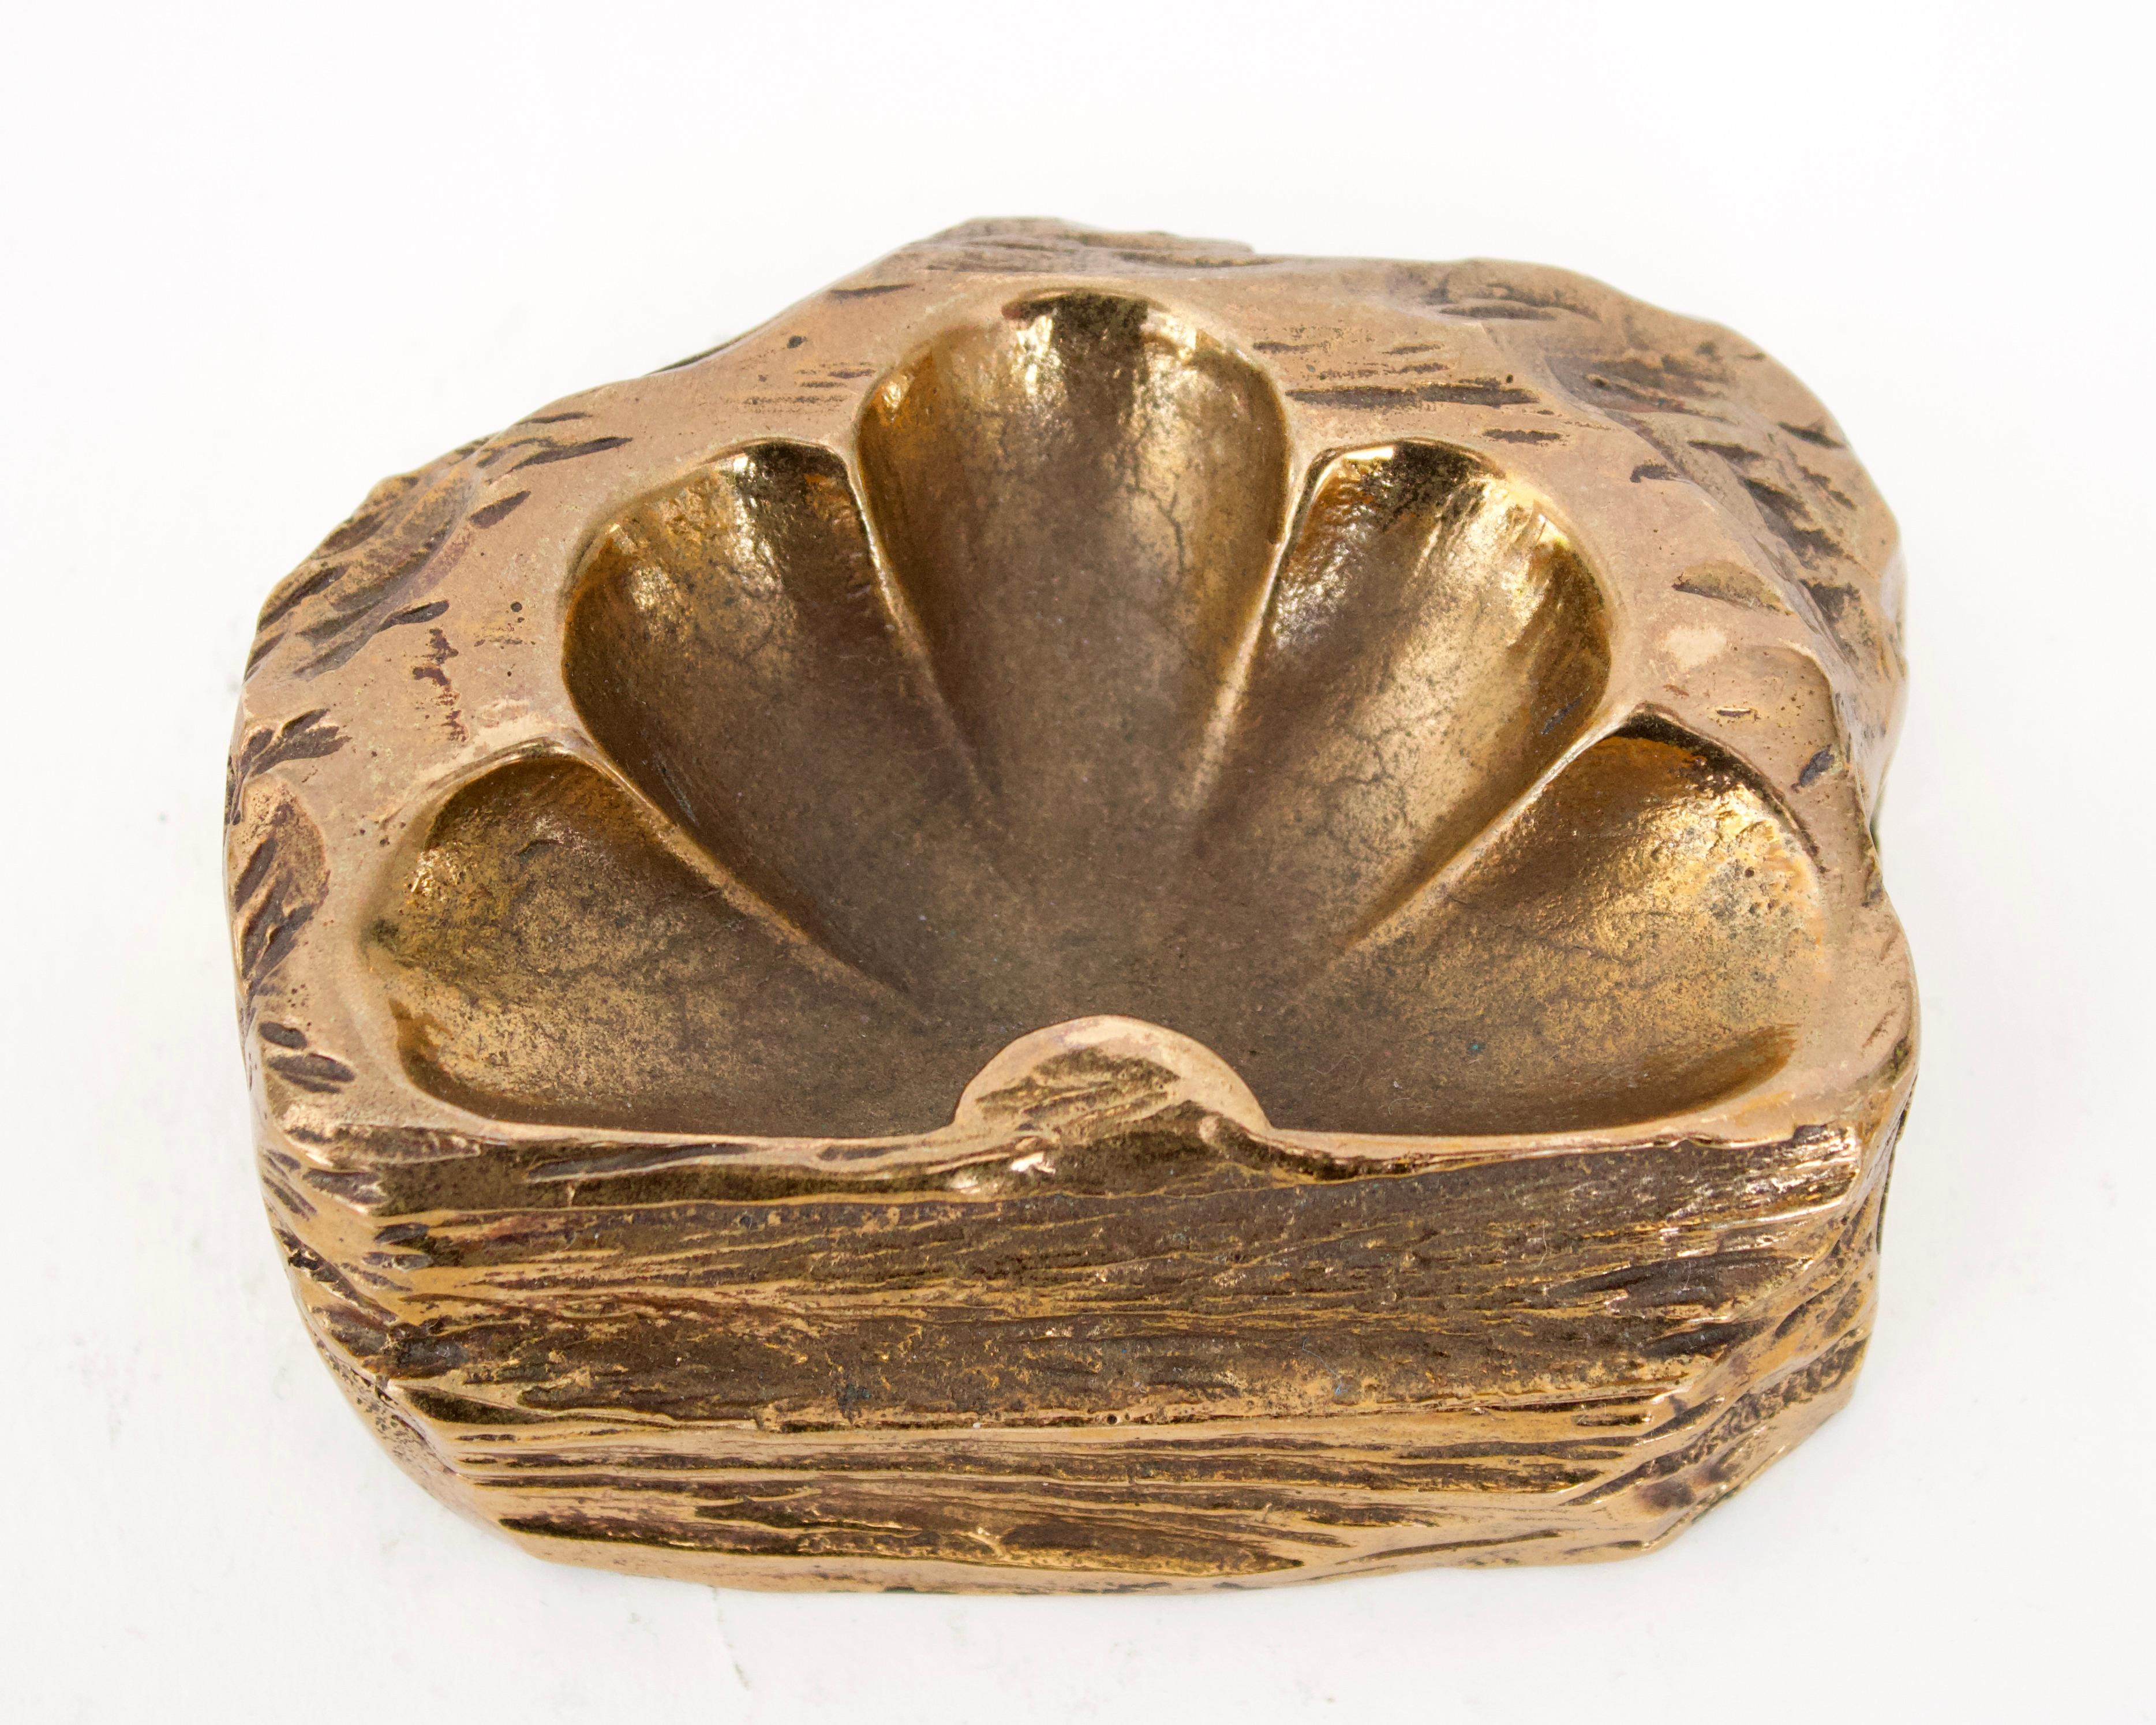 Un vide poche ou plat décoratif en bronze de l'artiste française Monique Gerber. Cet exemple est une demi-fleur émergeant d'une grotte rocheuse très sculpturale. 
 

